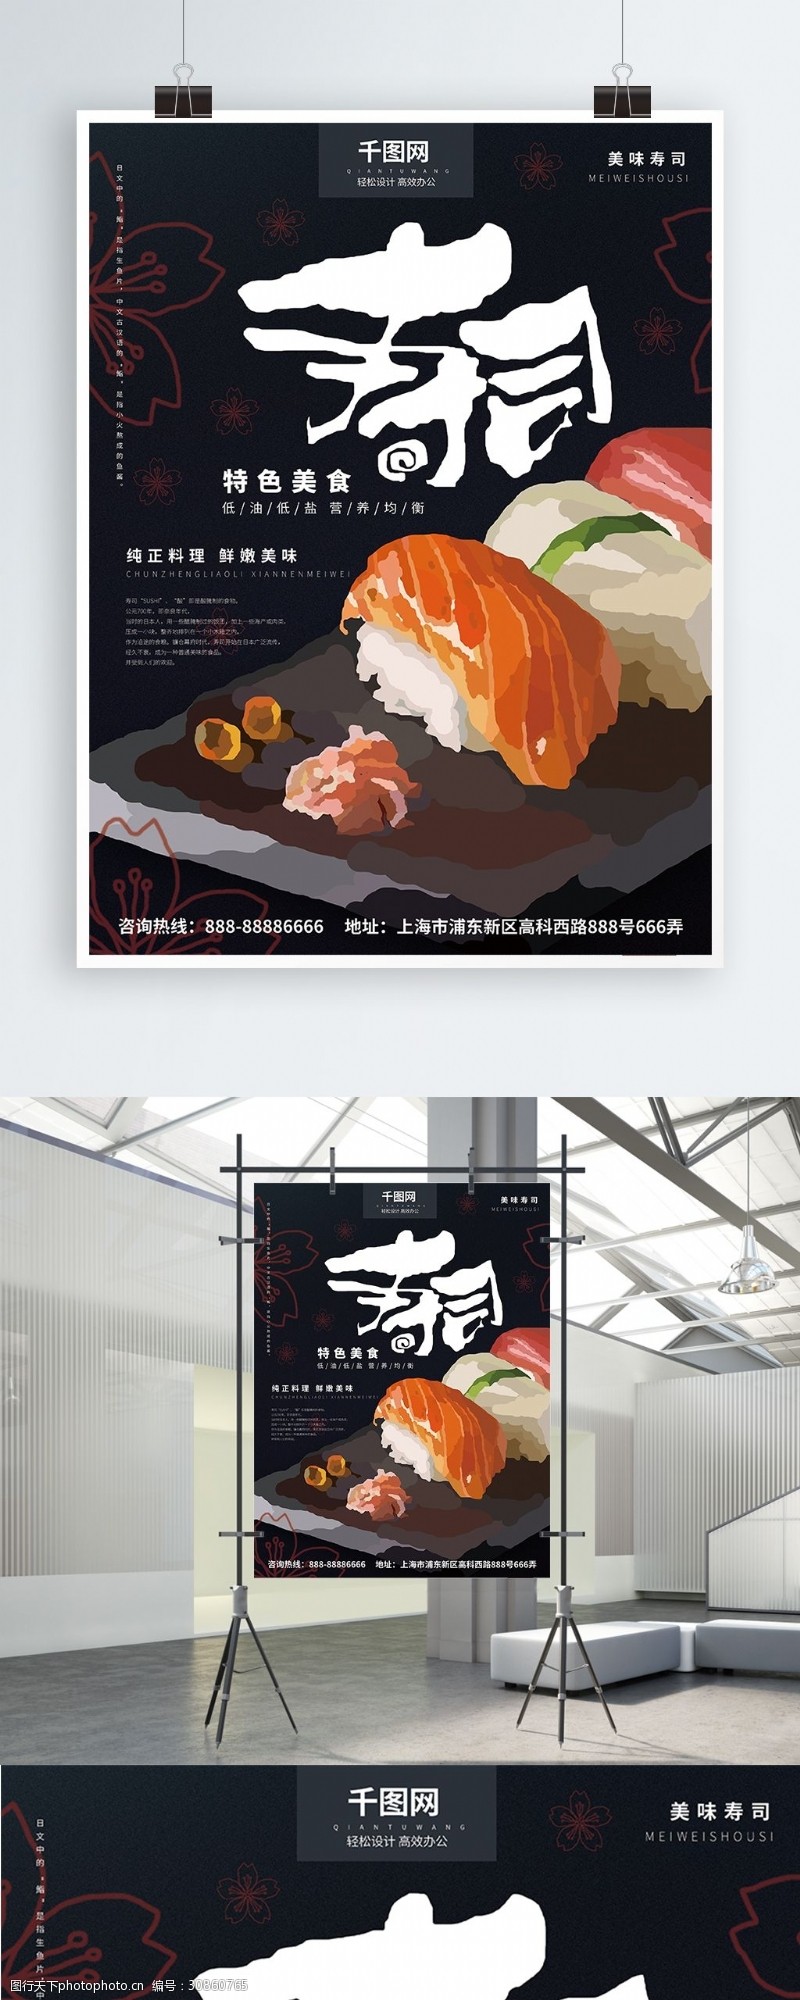 寿司醋原创手绘特色美食寿司海报